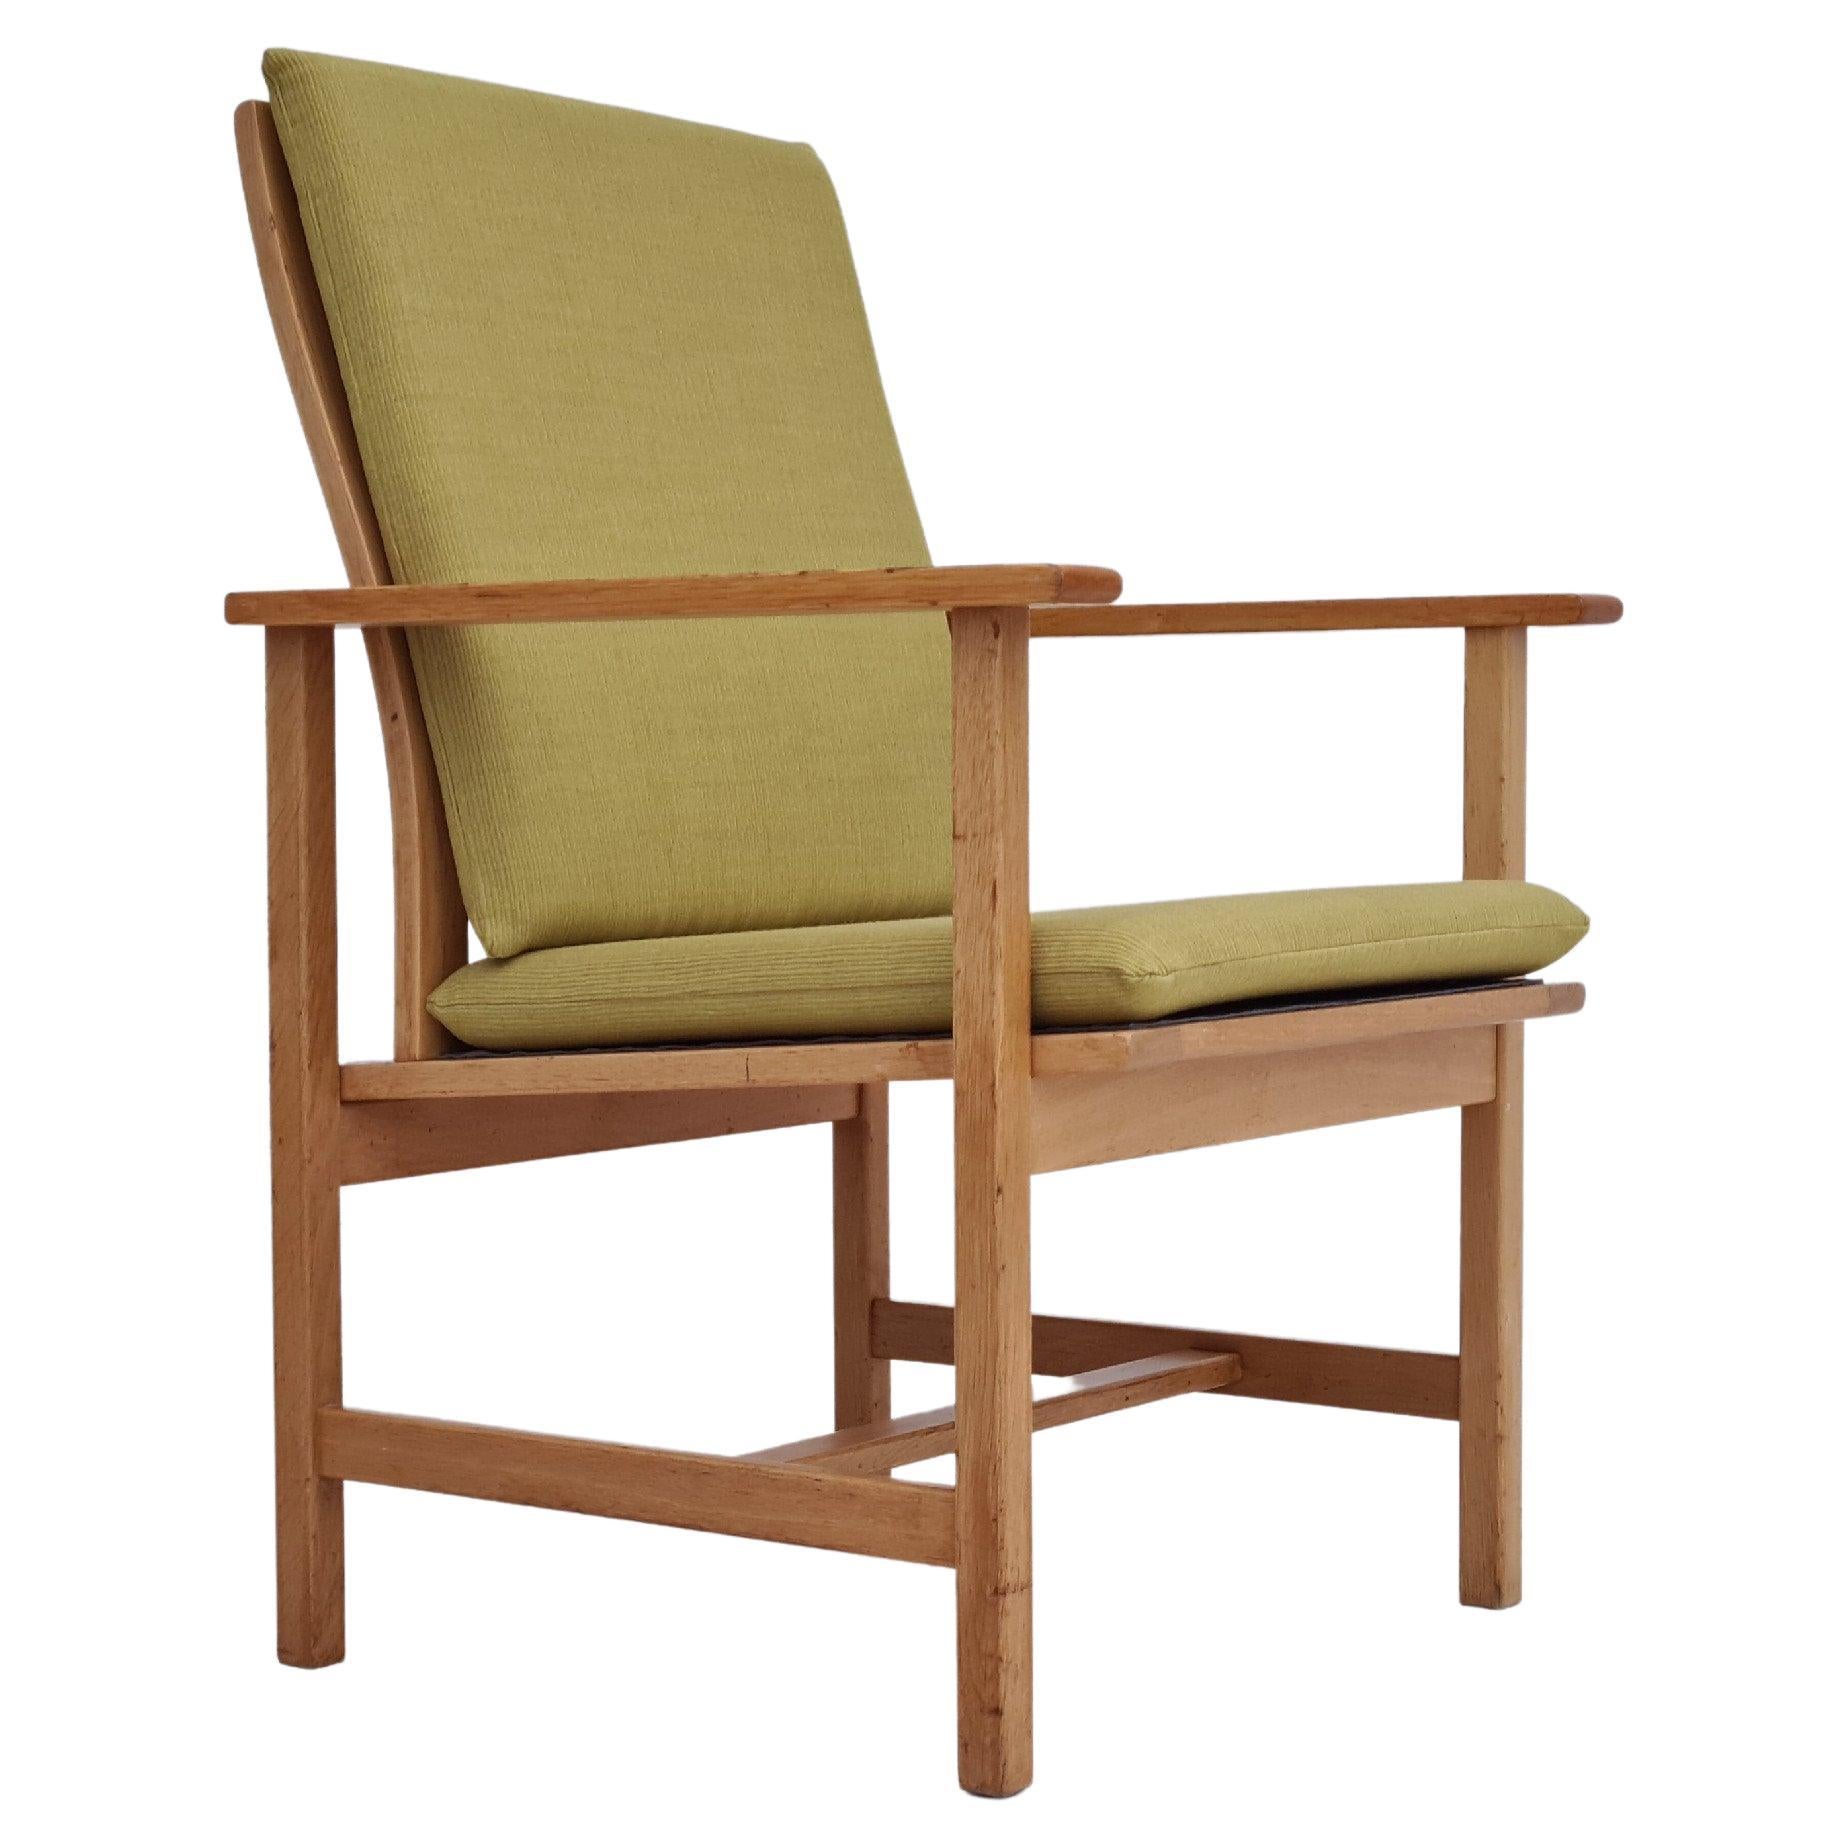 Années 80, design danois par Børge Mogensen, fauteuil entièrement remeublé